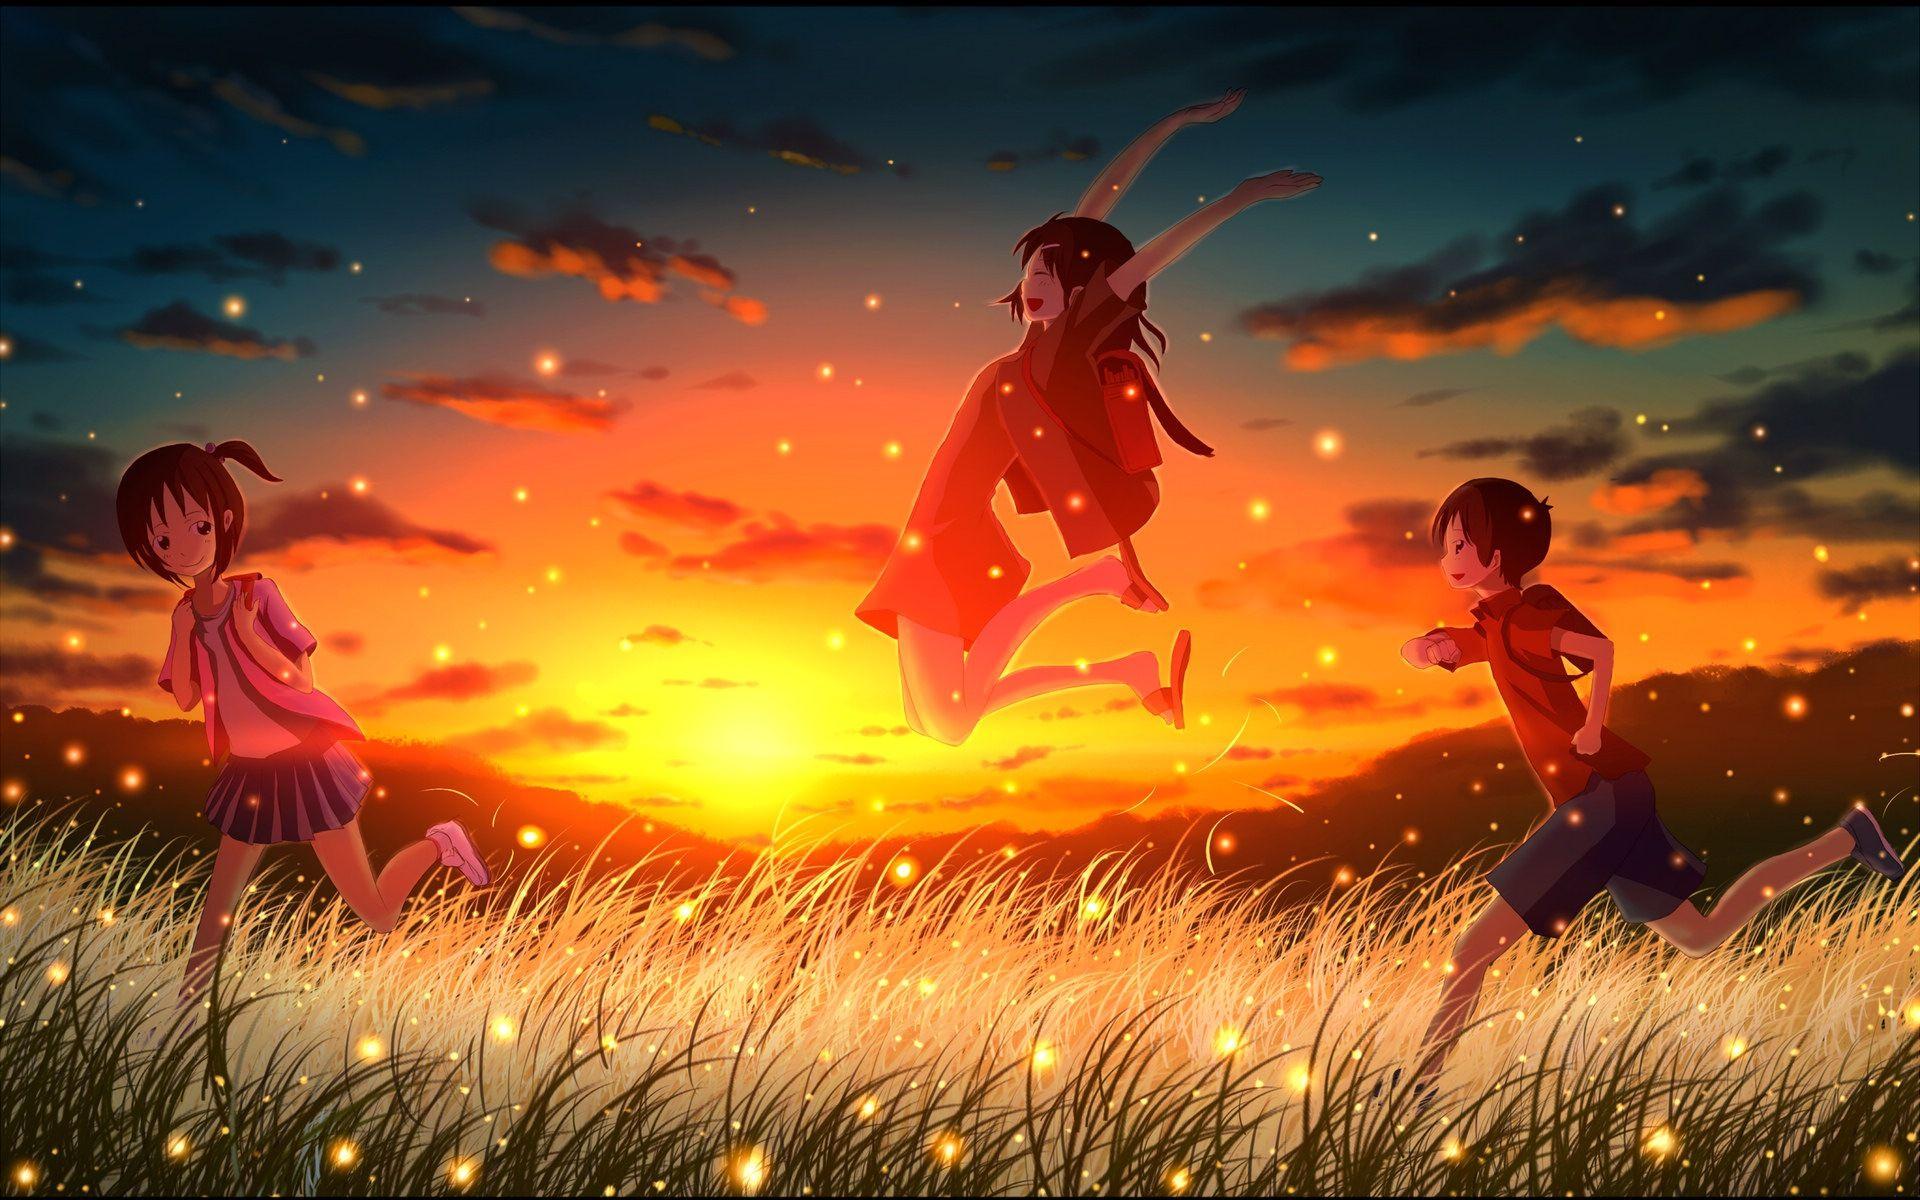 1920x1200 Firefly Summer Hình nền anime đẹp - 1920x1200 Wallpaper Tải xuống - Firefly Summer Hình nền anime đẹp - Hình nền Anime - Trang web V3 Wallpaper